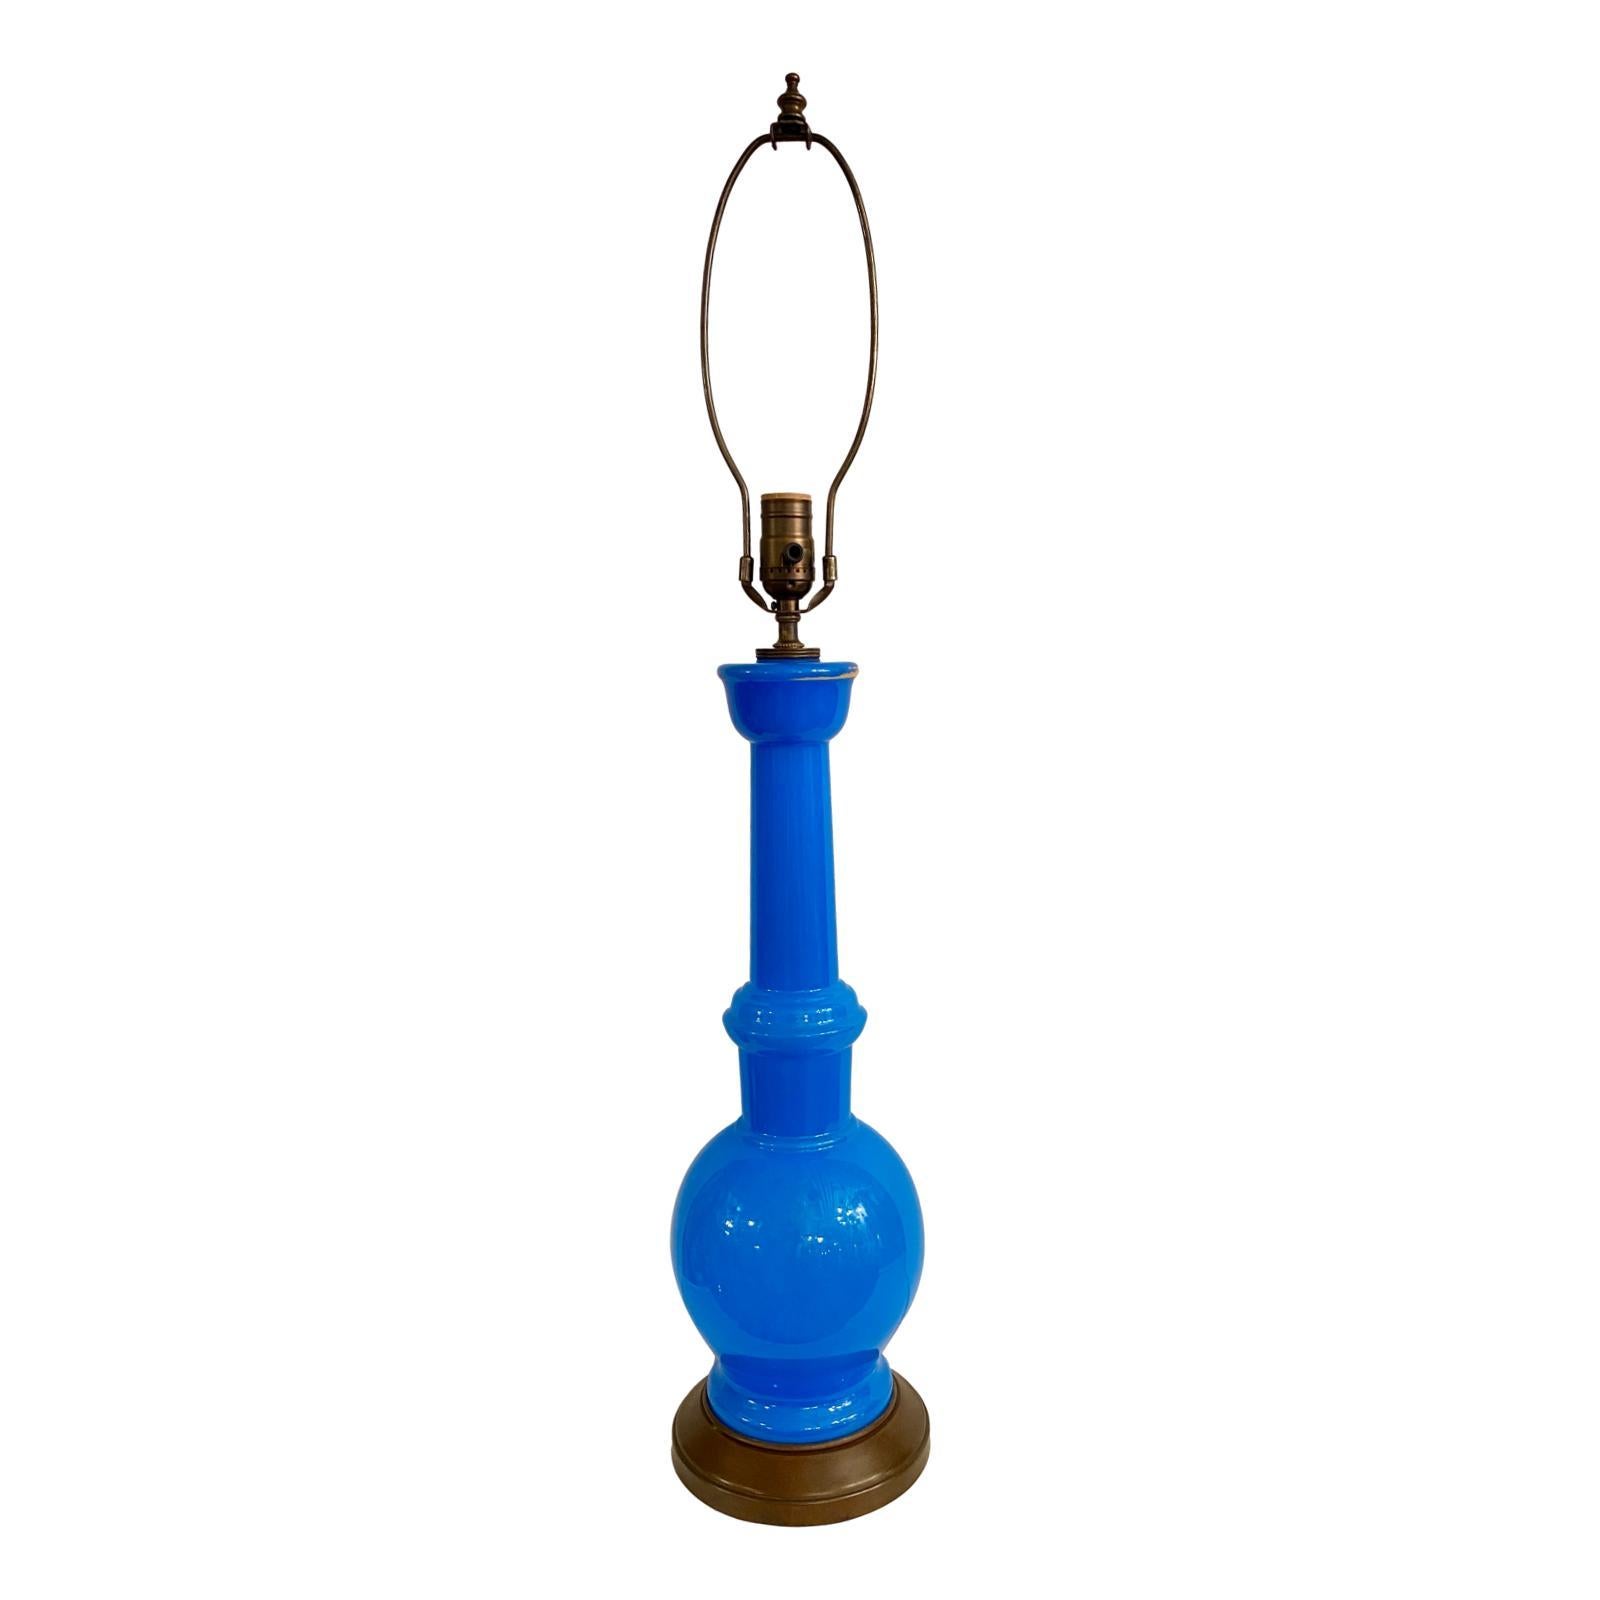 Lampe de table en verre opalin bleu, d'origine française, datant des années 1930.

Mesures :
Hauteur du corps : 23
Diamètre au plus large : 7 pouces